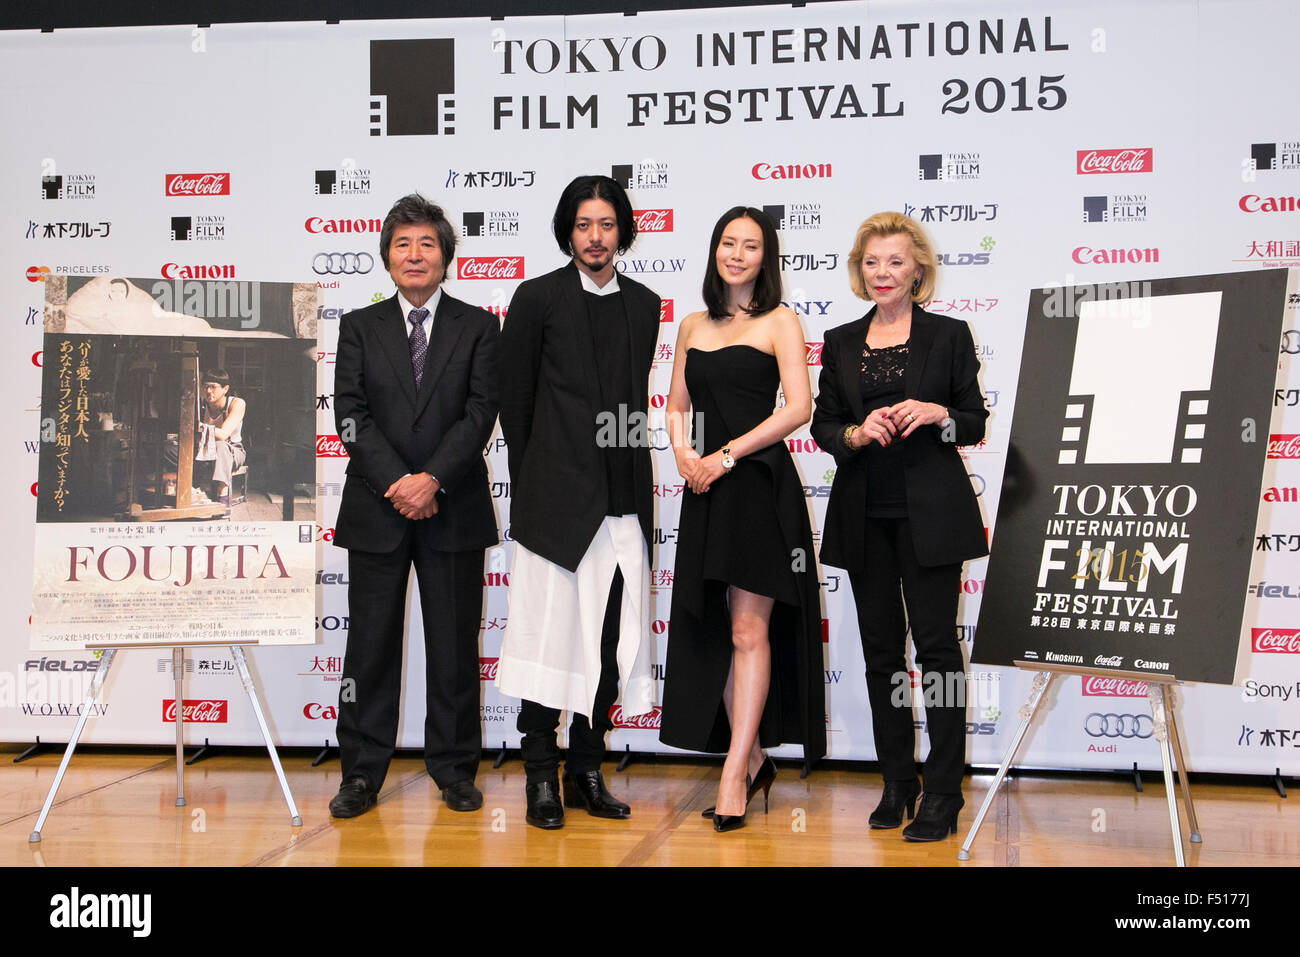 (L à R) Directeur Eliseo Subiela, acteur Jo Odagiri, actrice Miki Nakatani et producteur français Claudie Ossard poser pour les caméras au cours d'une conférence de presse pour le film ''FOUJITA'' à la Toho CINEMAS à Roppongi sur Octobre 26, 2015, Tokyo, Japon. Après un écart de 10 ans depuis son dernier film, Oguri revient en tant que réalisateur, scénariste et co-producteur du film qui sortira dans les cinémas japonais le 14 novembre. Foujita raconte l'histoire de l'artiste japonais Tsuguharu Foujita qui s'installe à Paris dans les années 1920. La projection fait partie de la 28e Festival International du Film de Tokyo qui est l'un des b Banque D'Images